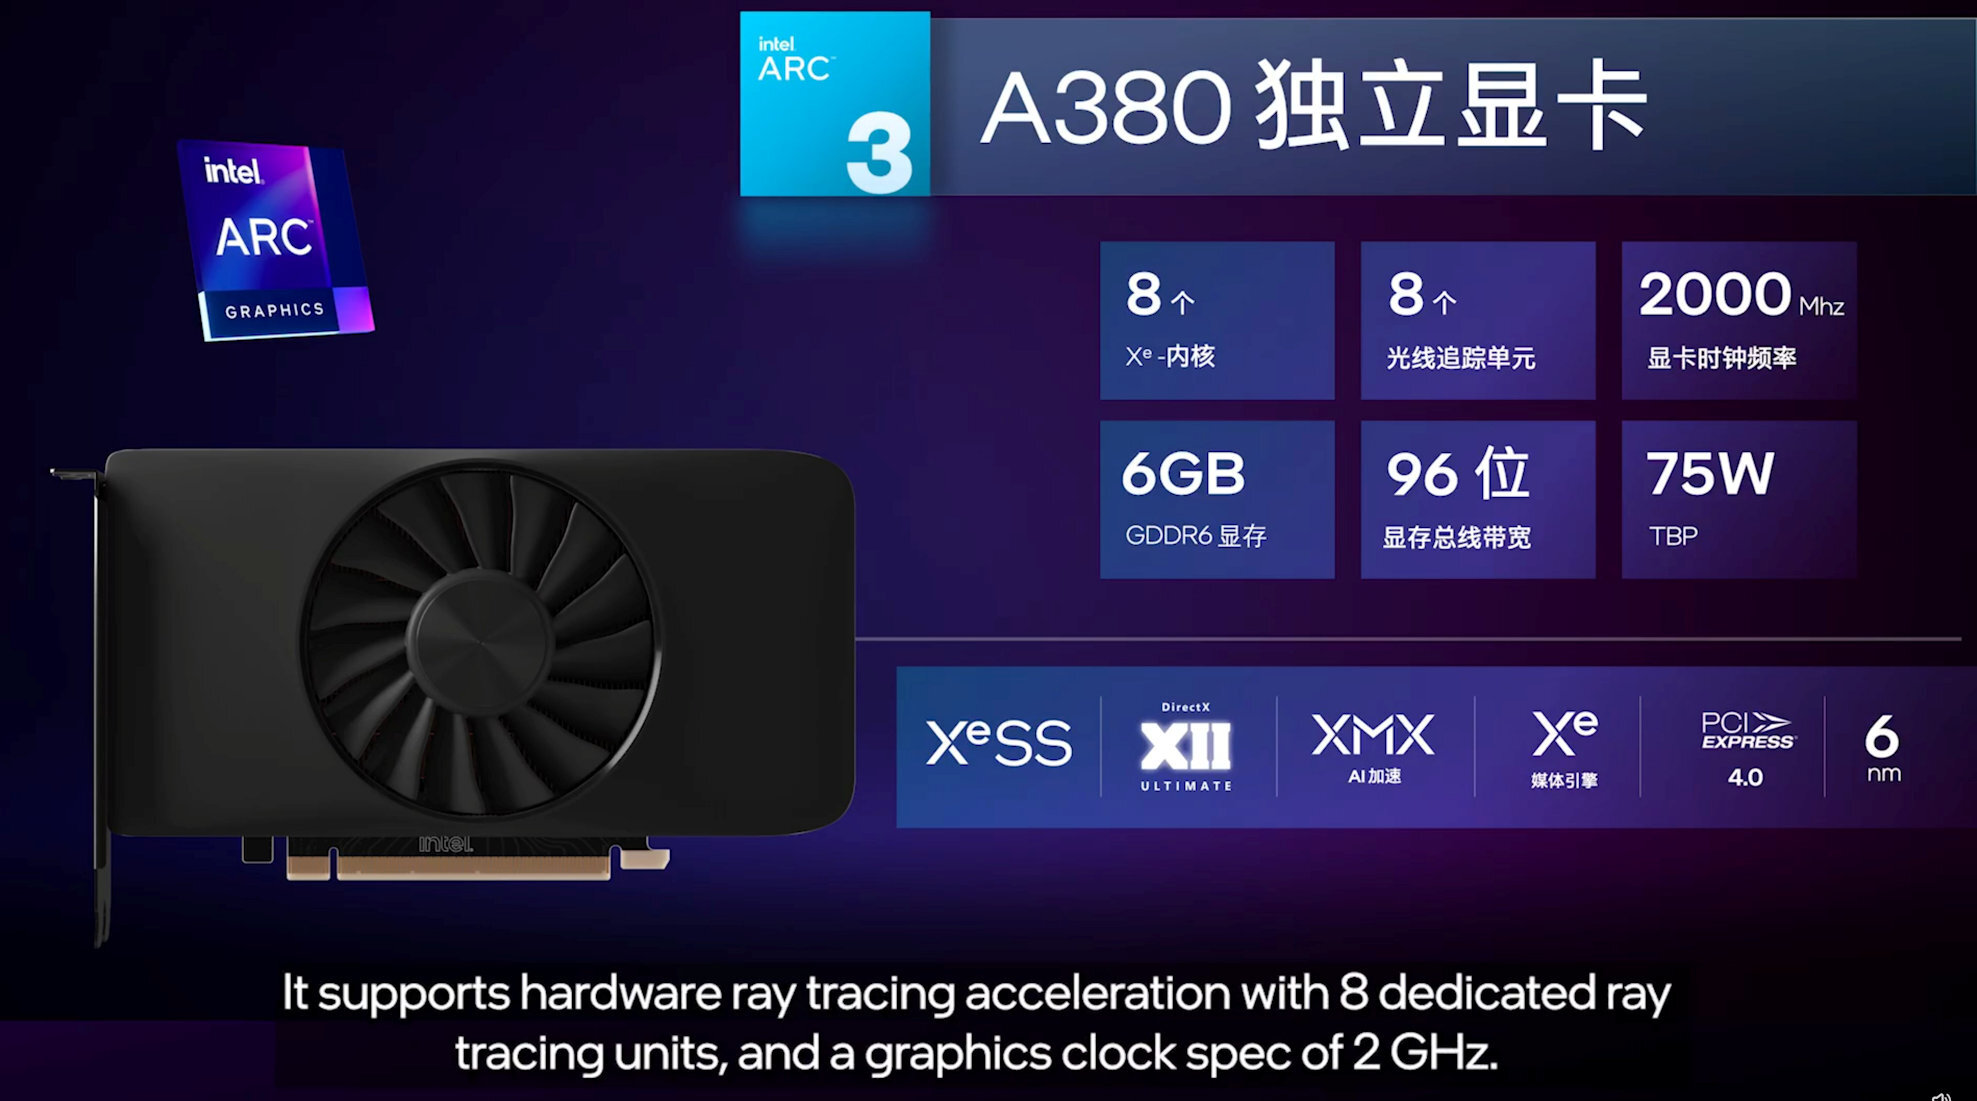 Λανσαρίστηκε η νέα Intel Arc A380 στην Κίνα αλλά είναι τόσο γρήγορη όσο ισχυρίζεται η Intel;